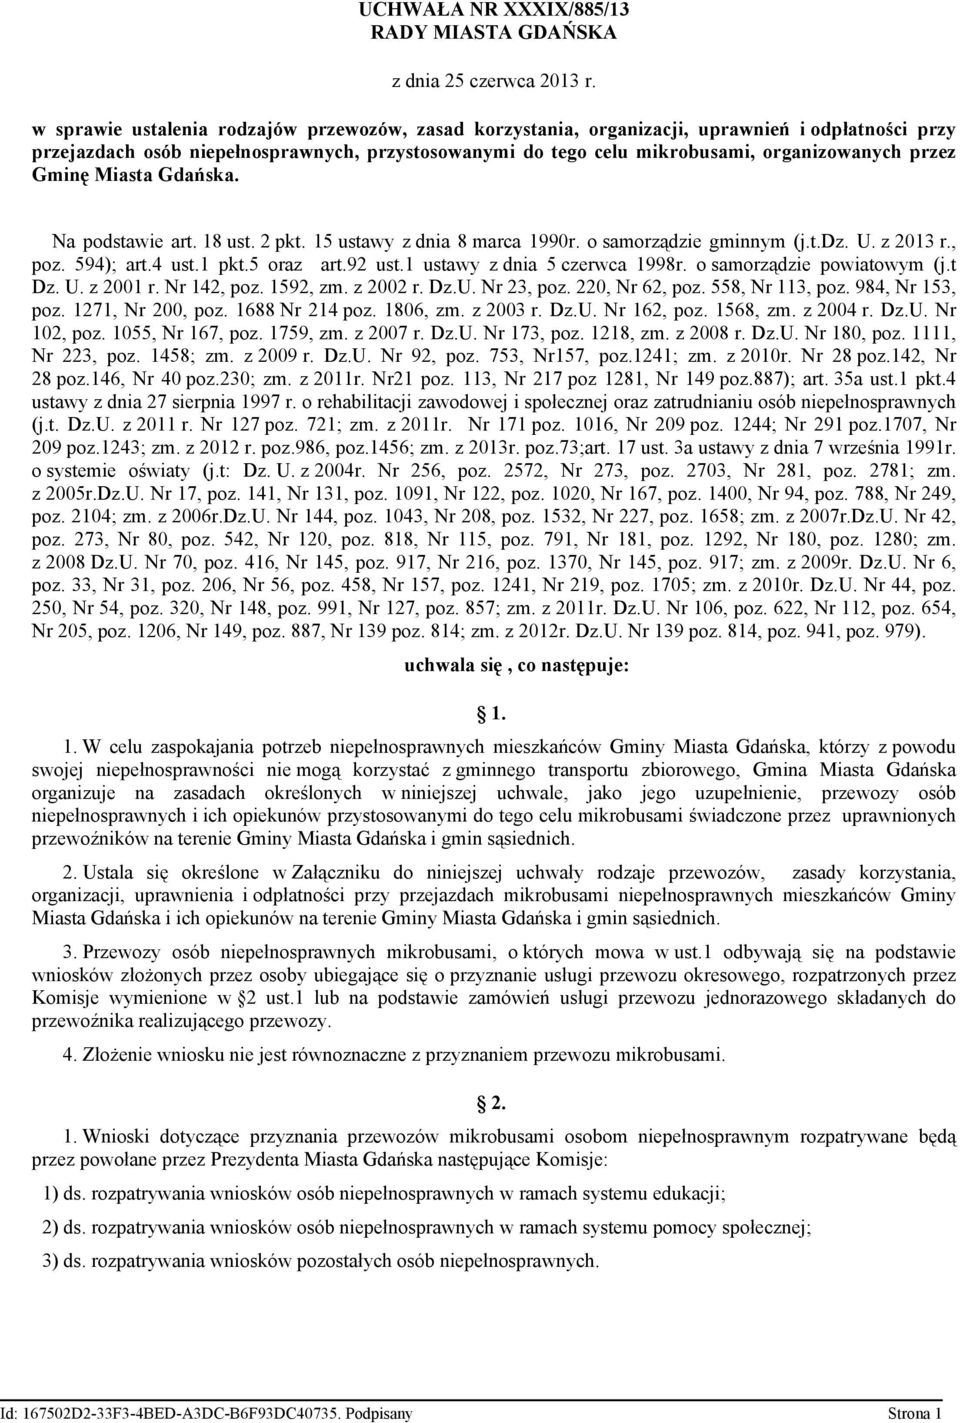 Gminę Miasta Gdańska. Na podstawie art. 18 ust. 2 pkt. 15 ustawy z dnia 8 marca 1990r. o samorządzie gminnym (j.t.dz. U. z 2013 r., poz. 594); art.4 ust.1 pkt.5 oraz art.92 ust.